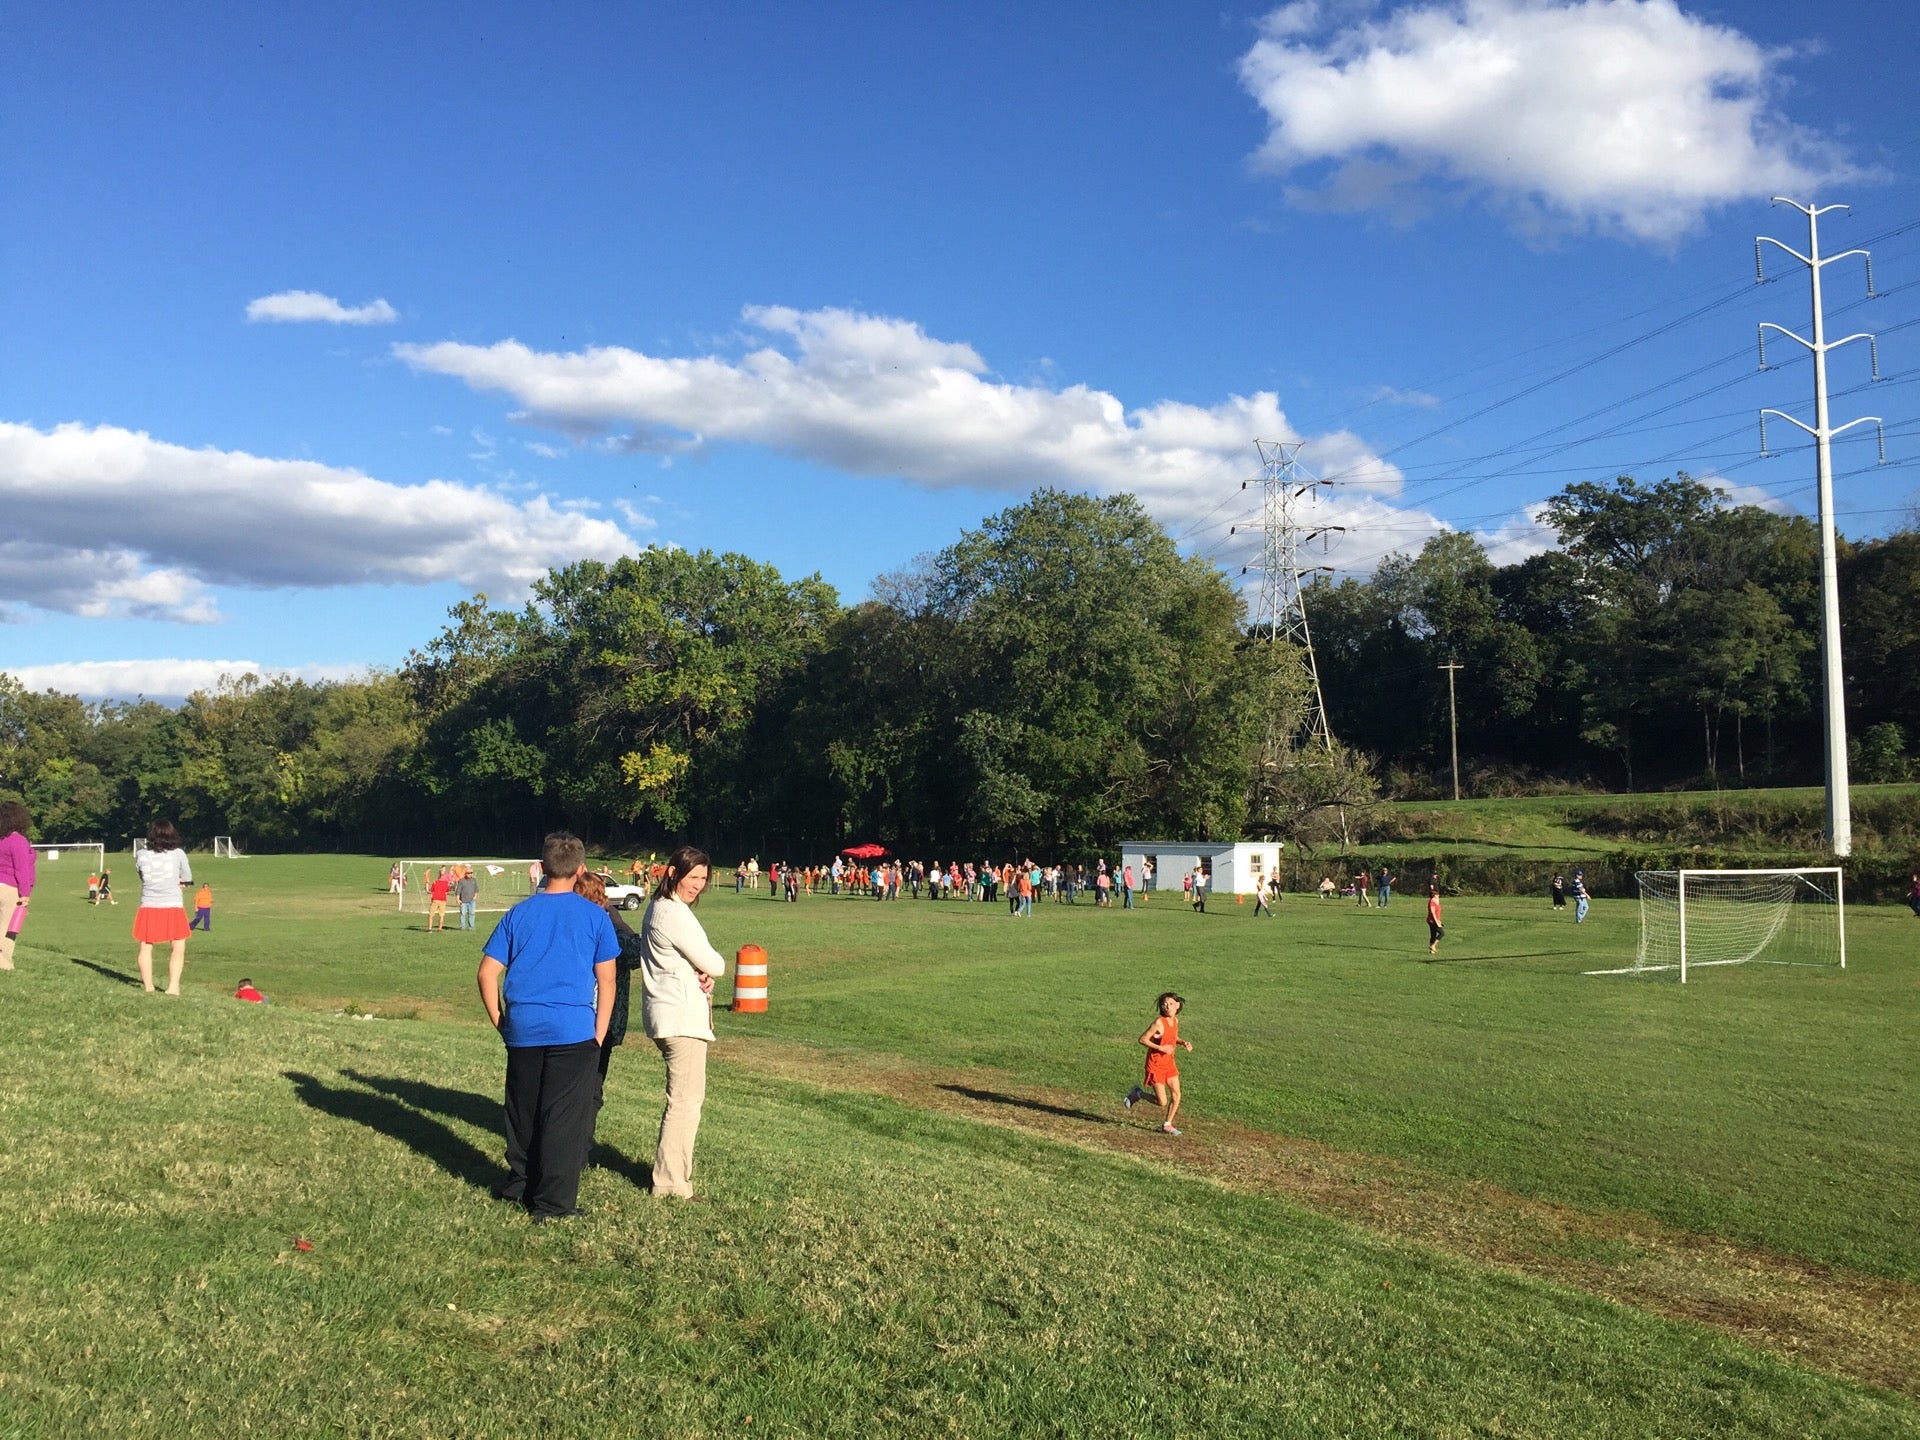 vsdb-soccer-fields-cardinal-dr-staunton-va-soccer-equipment